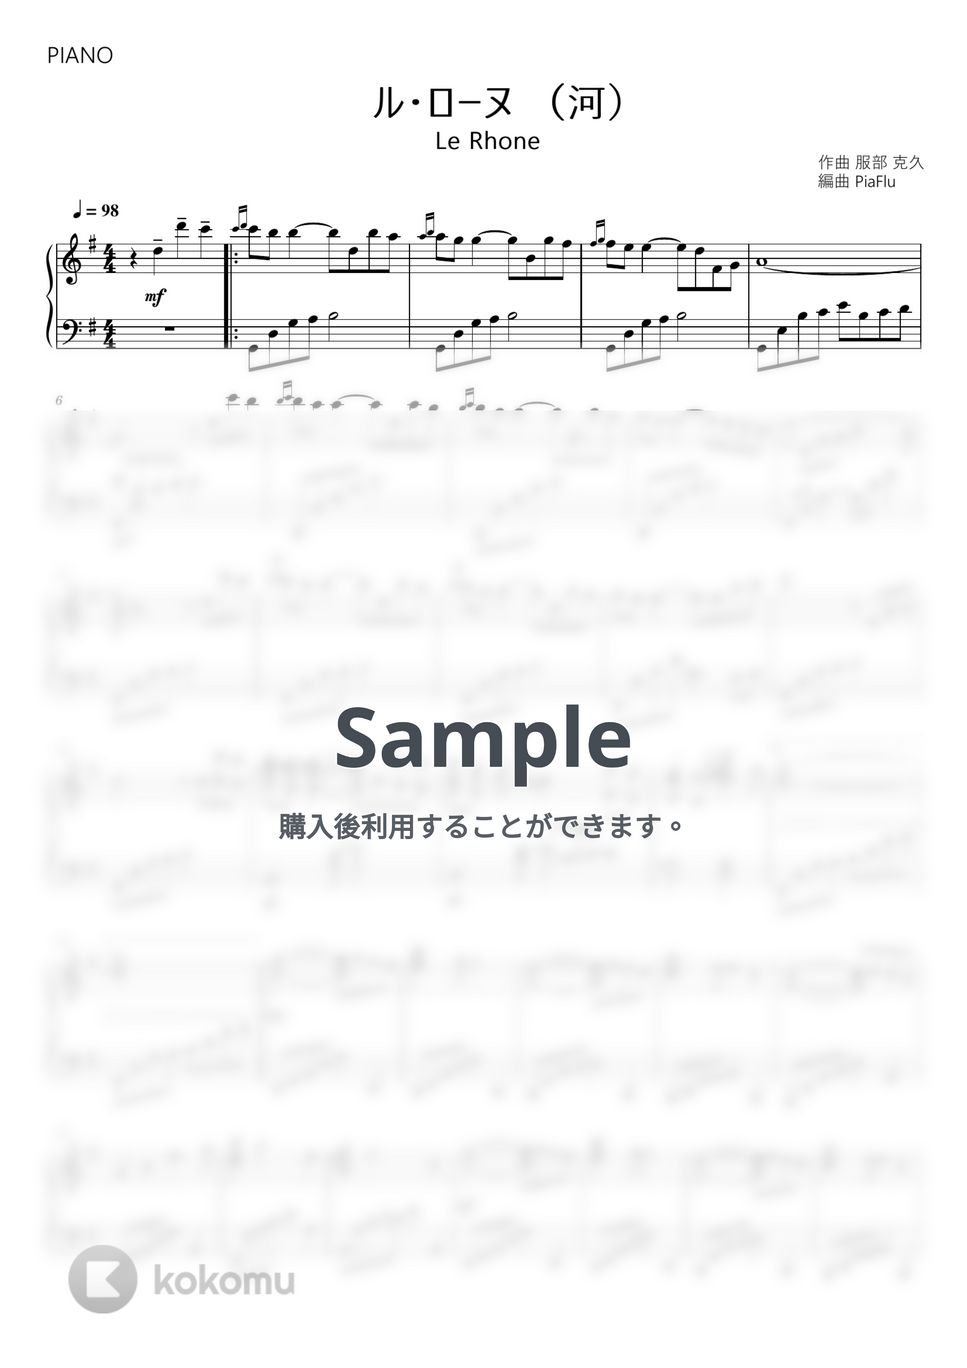 服部克久 - ル・ローヌ (河)【ピアノ】 by PiaFlu